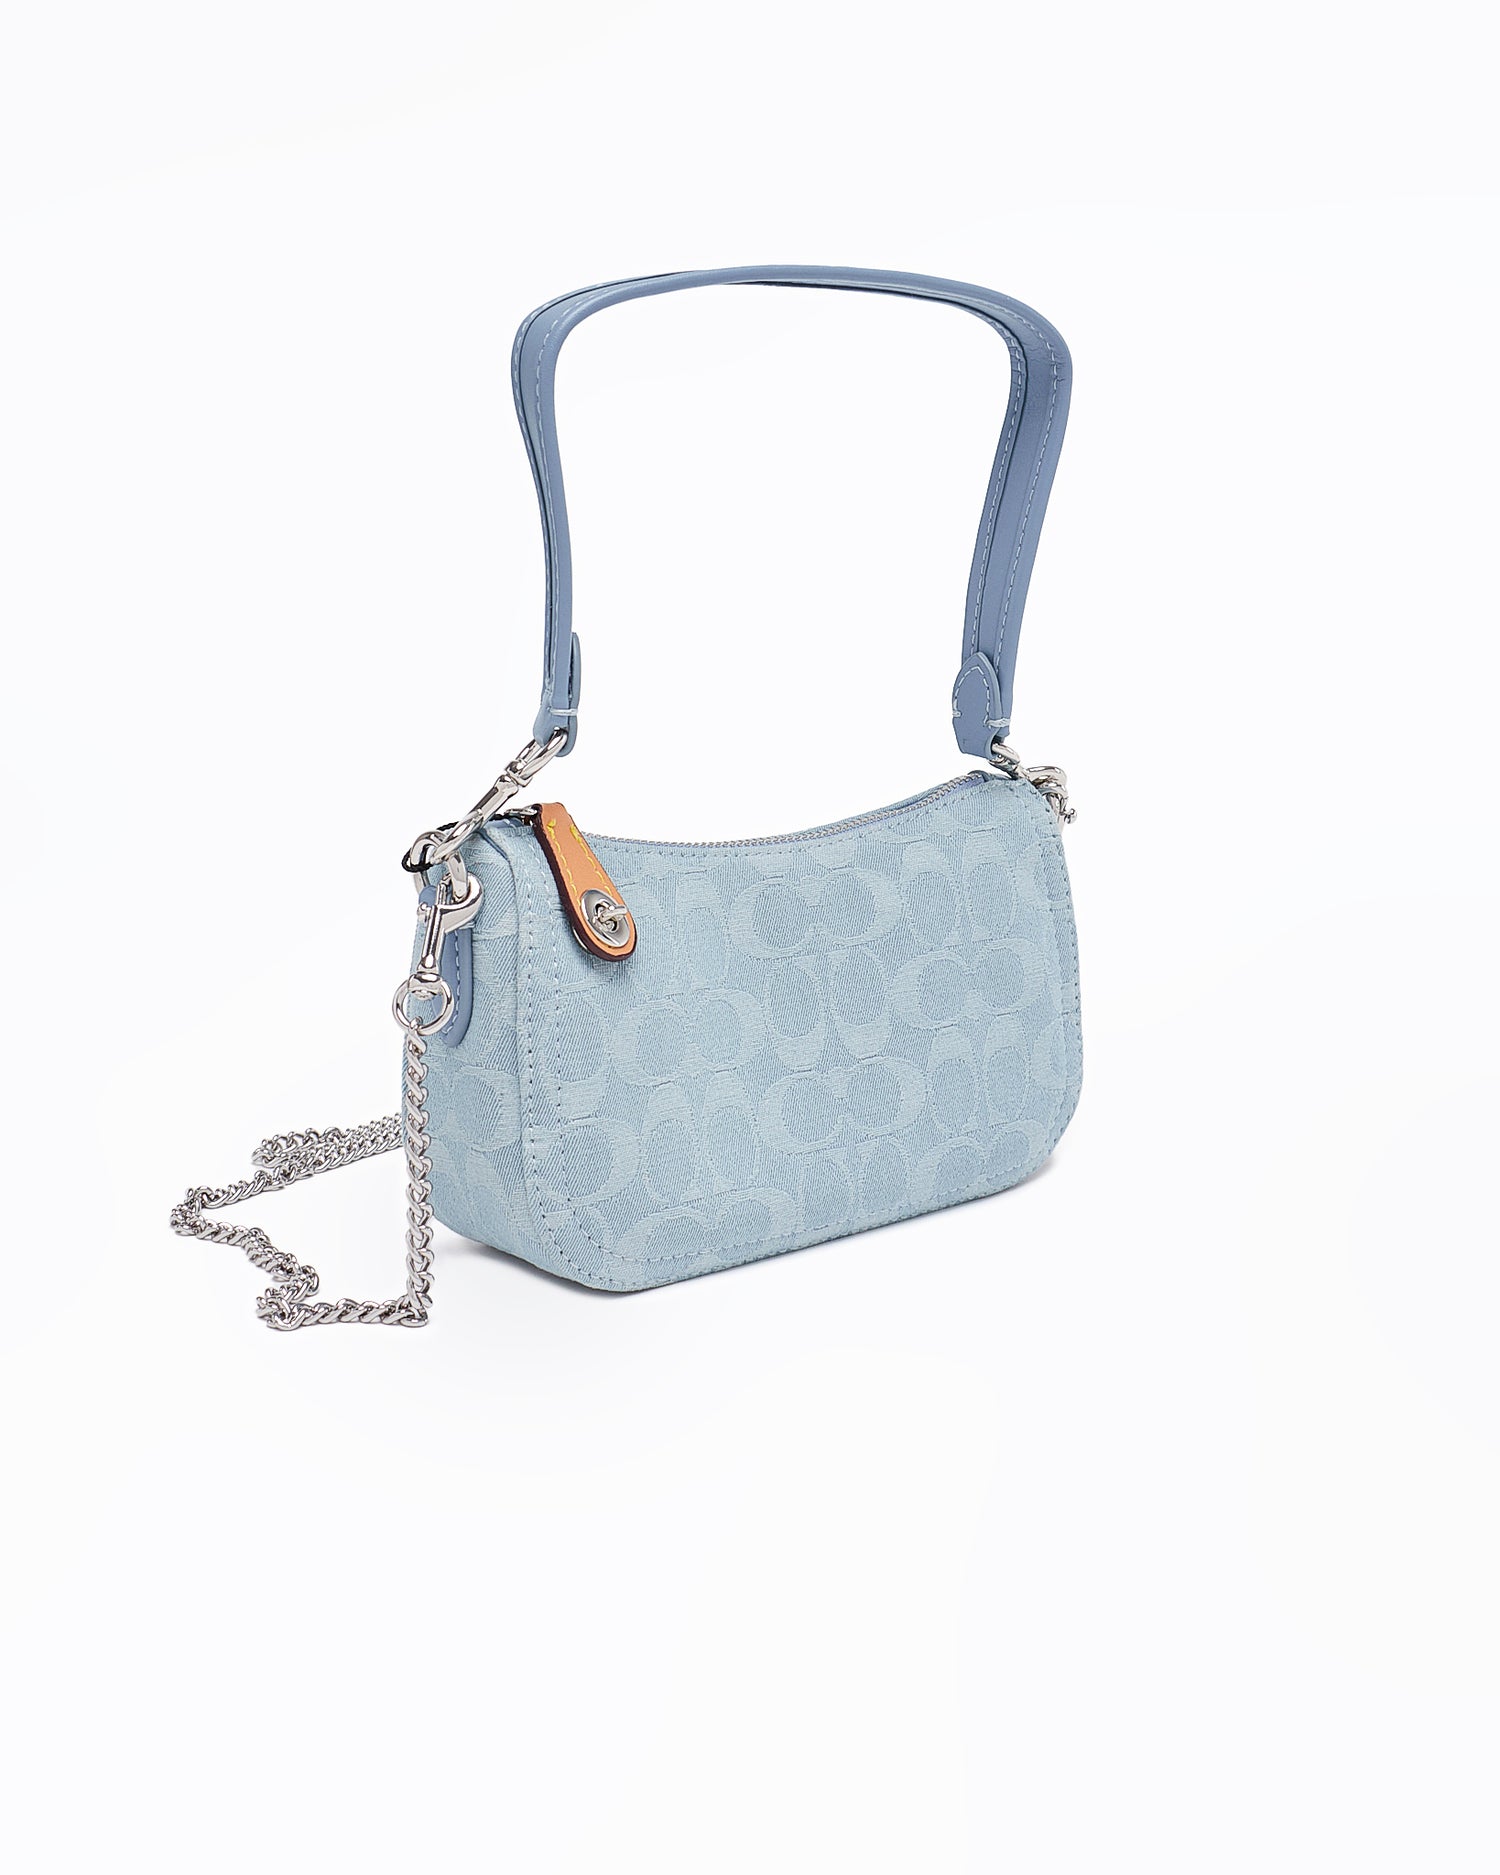 COA Pochette Lady Blue Bag 69.90